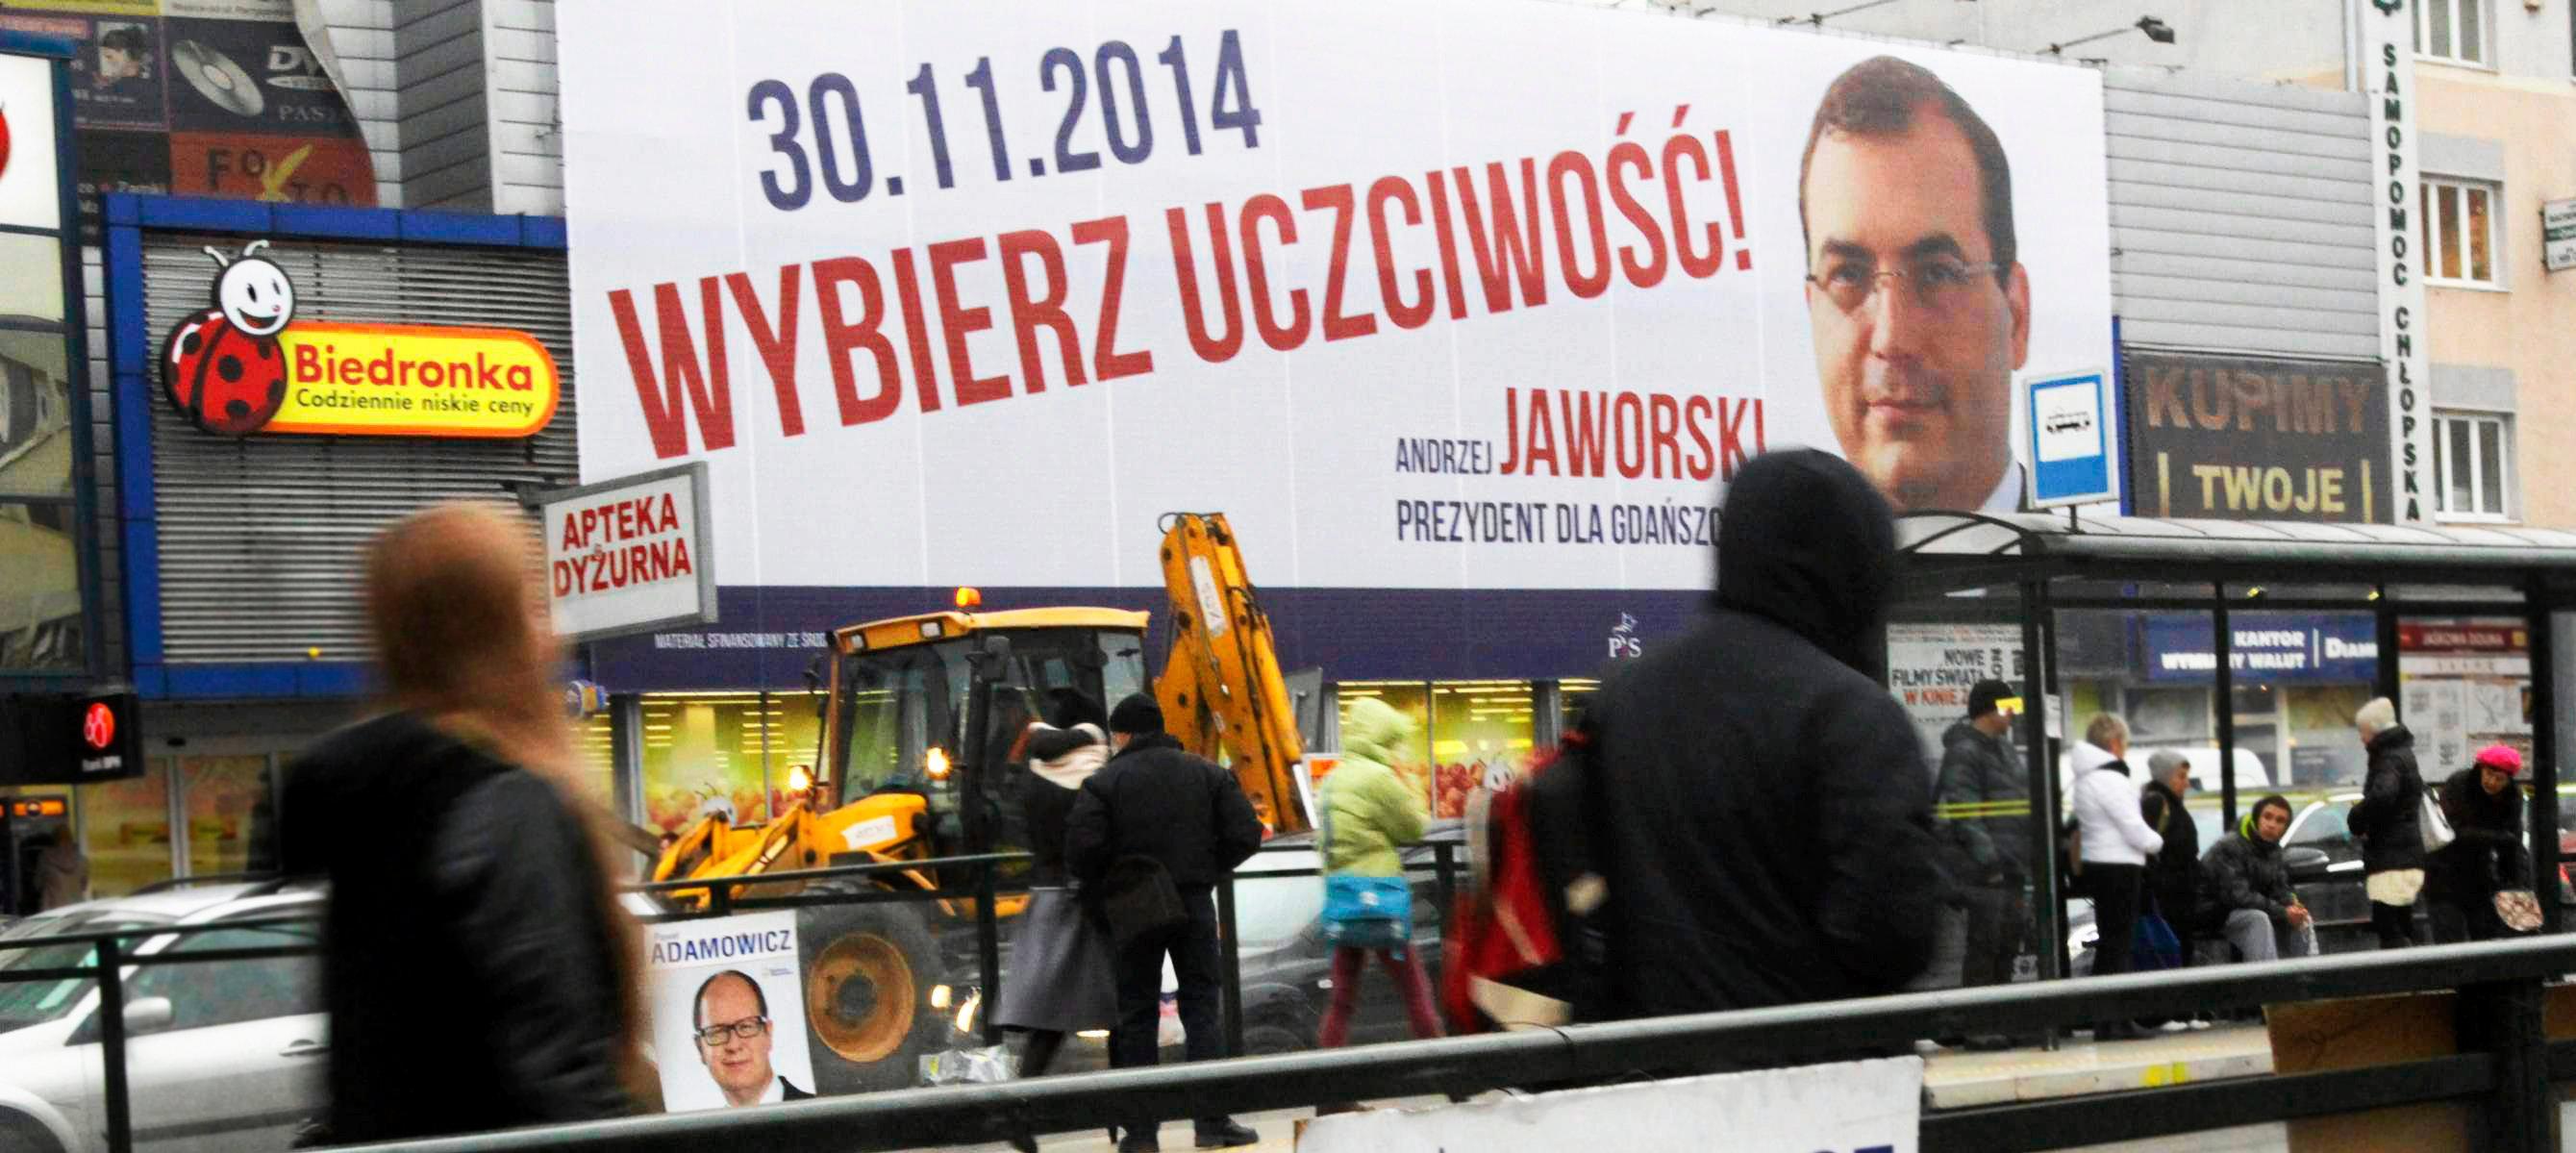 27.11.2014 Gdansk . Plakaty wyborcze Pawla Adamowicza i Andrzeja JaworskiegoFot. Agencja Gazeta